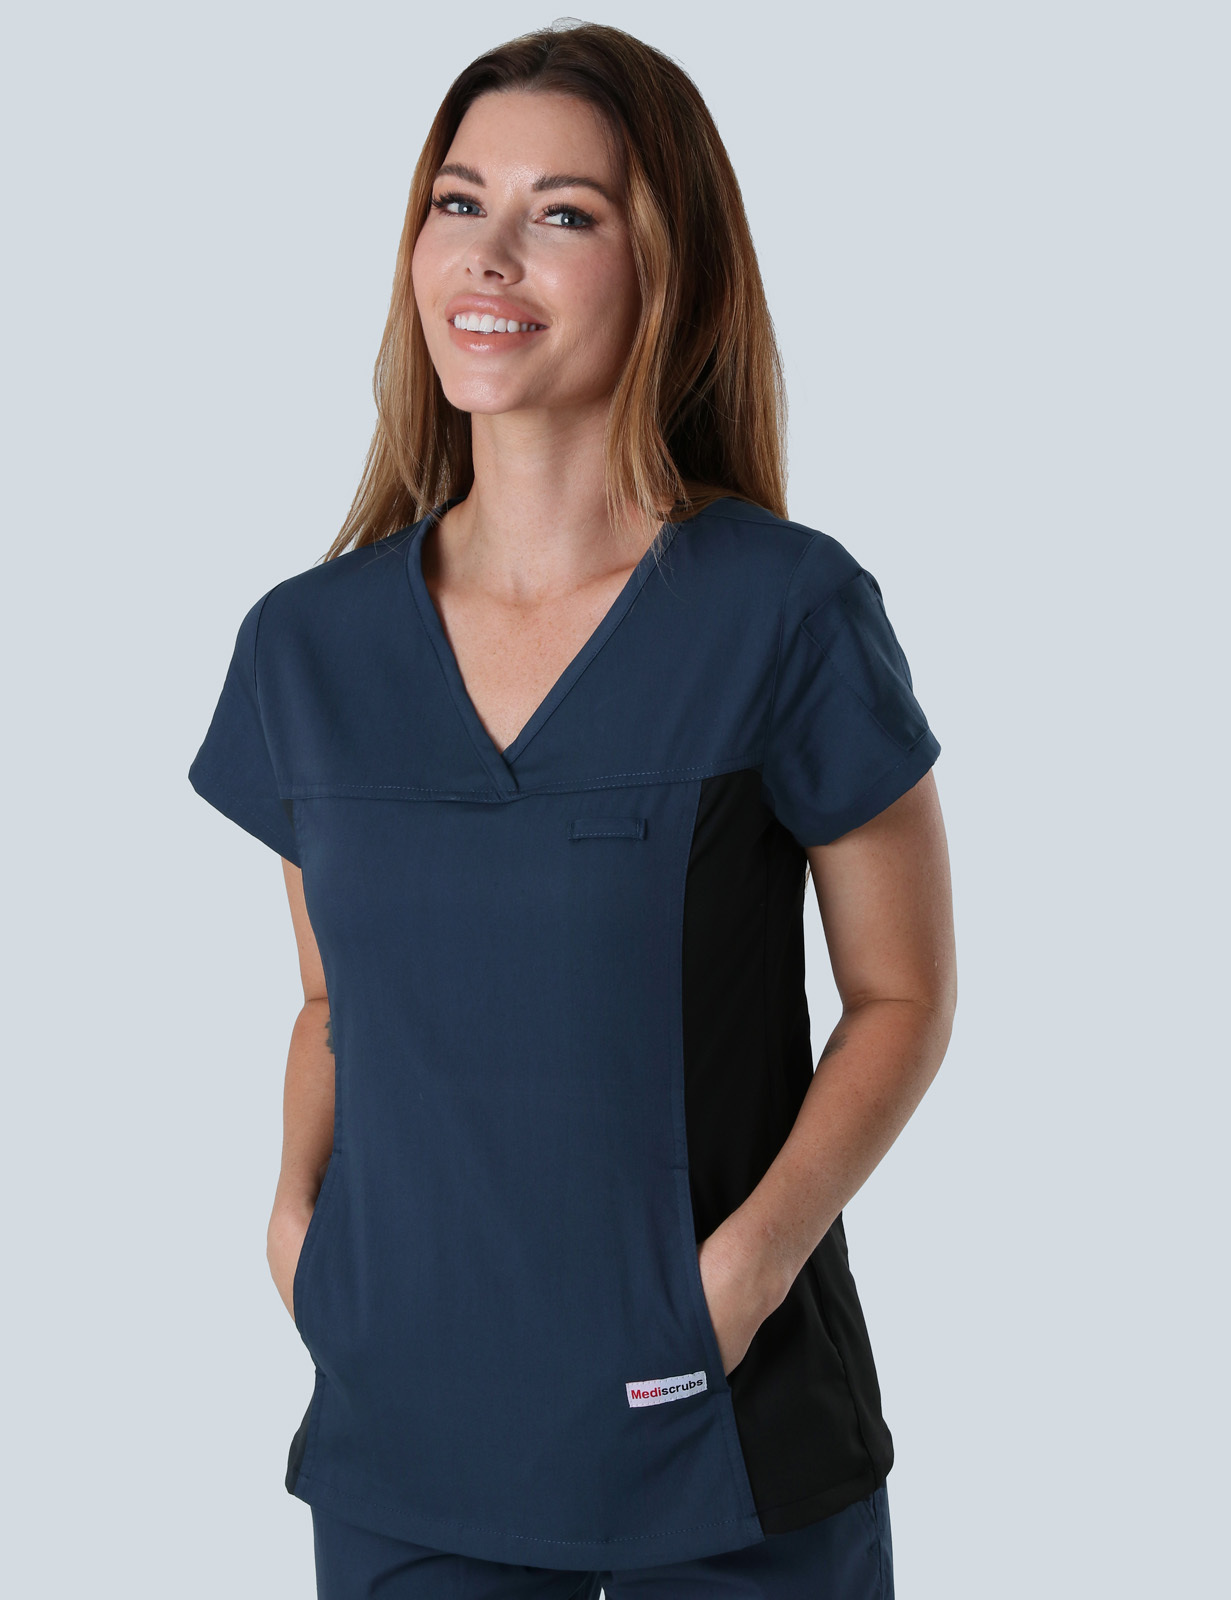 Monash Health Women's Doctor Uniform Set Bundle (Women's Fit Spandex Top and Cargo Pants in Navy + Logo)